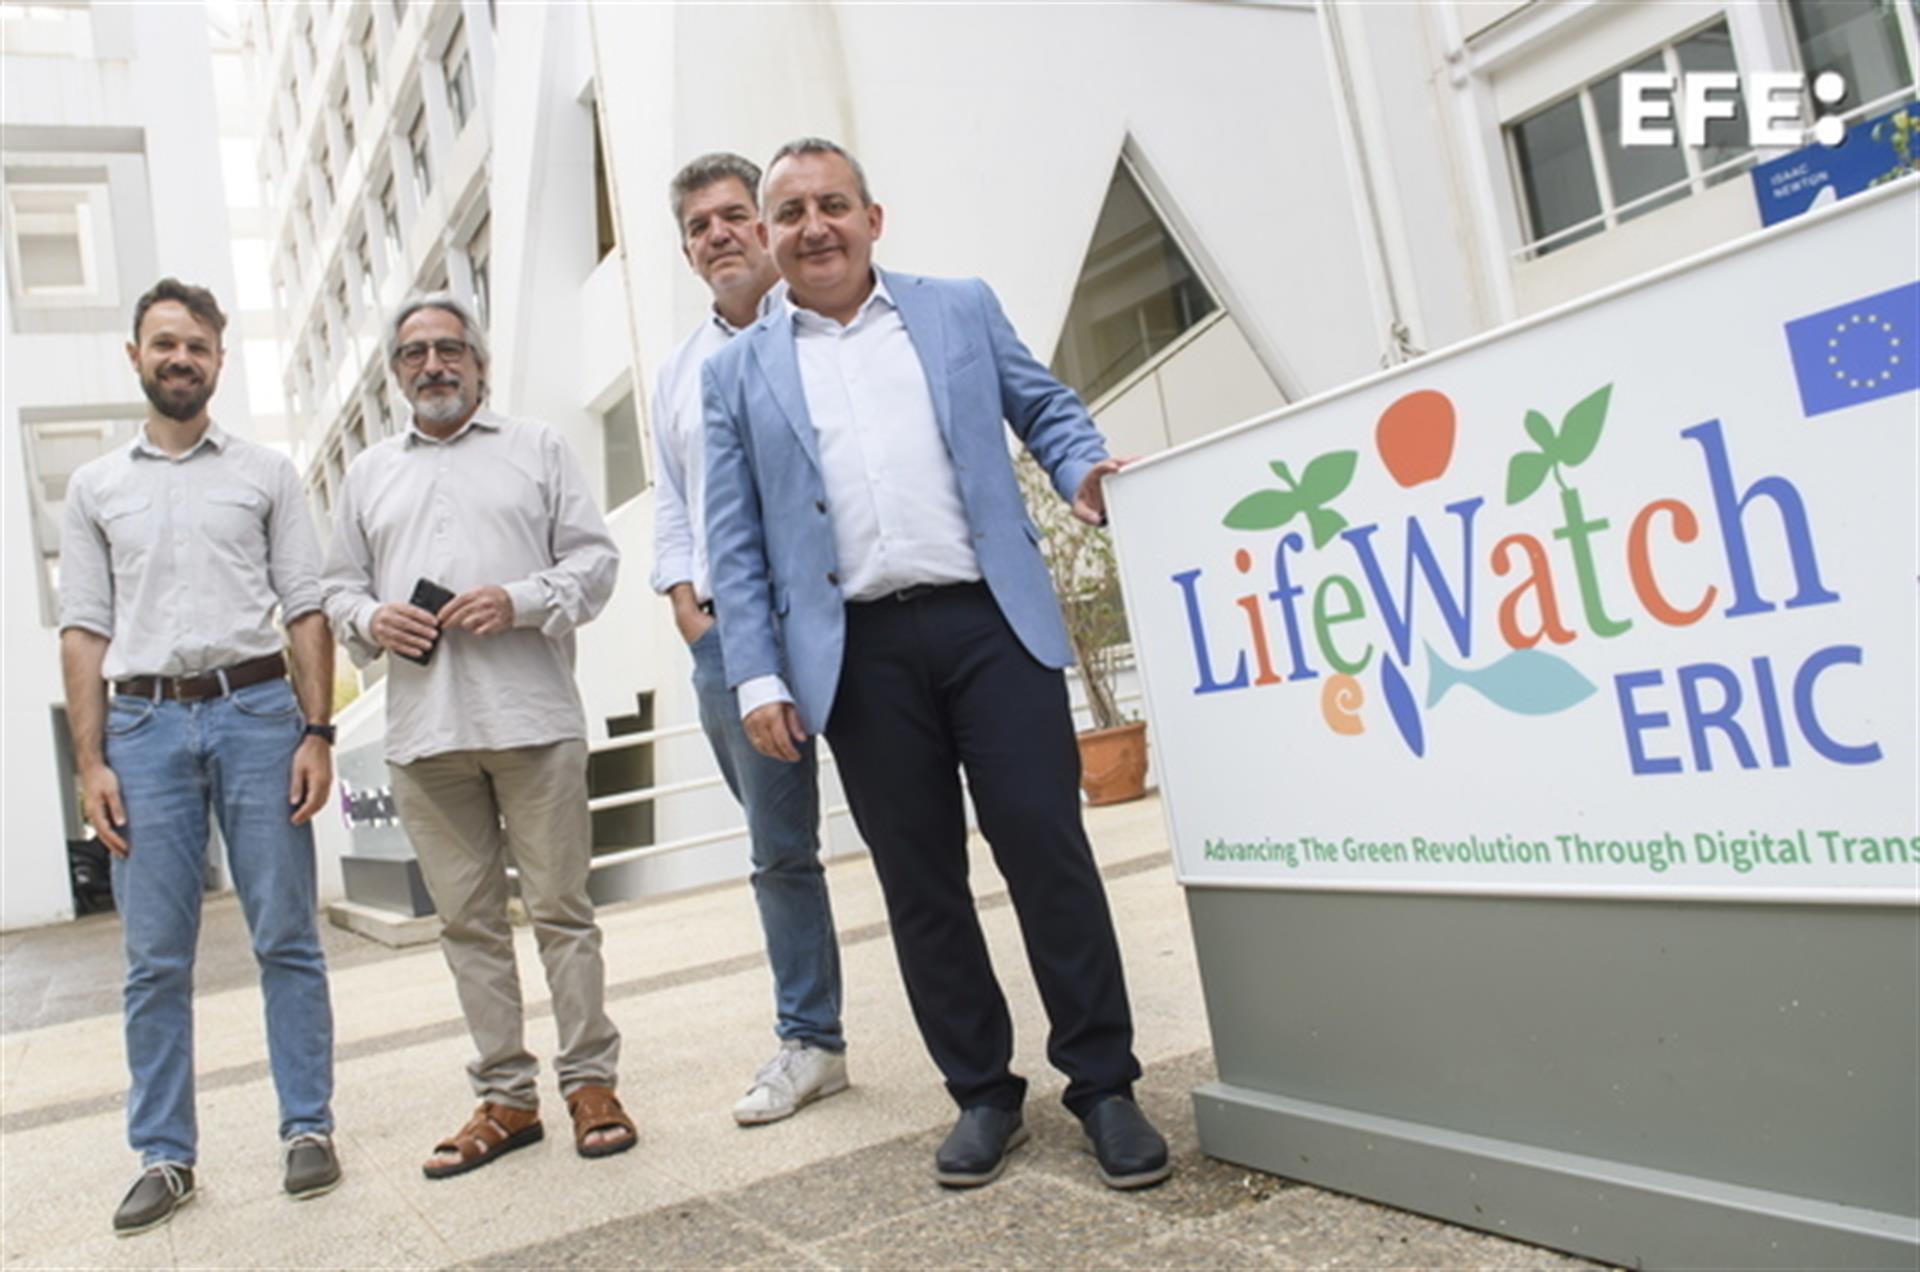 El Director Tecnológico del Consorcio Europeo LifeWatch Eric, Juan Miguel González Aranda(d) posa con tres compañeros, durante la entrevista concedida a EFE. EFE/ Raúl Caro.